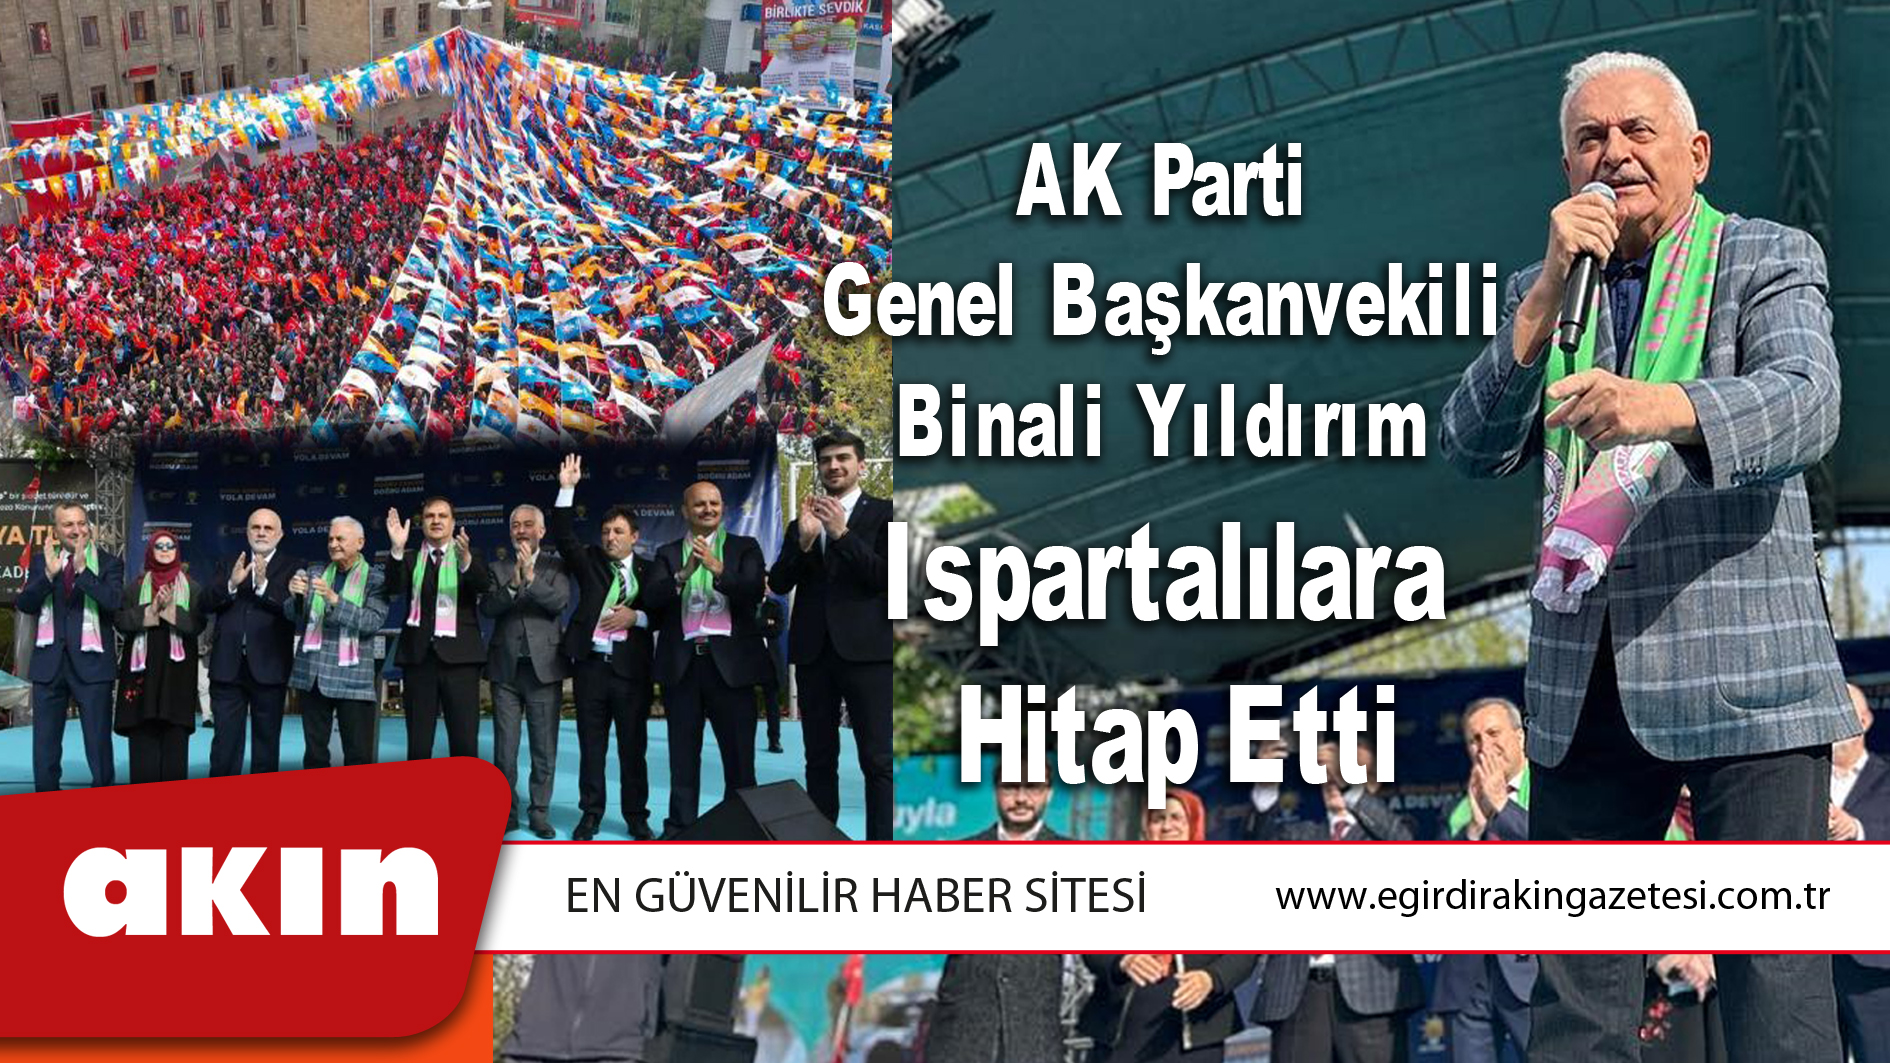 AK Parti Genel Başkanvekili Binali Yıldırım Ispartalılara Hitap Etti